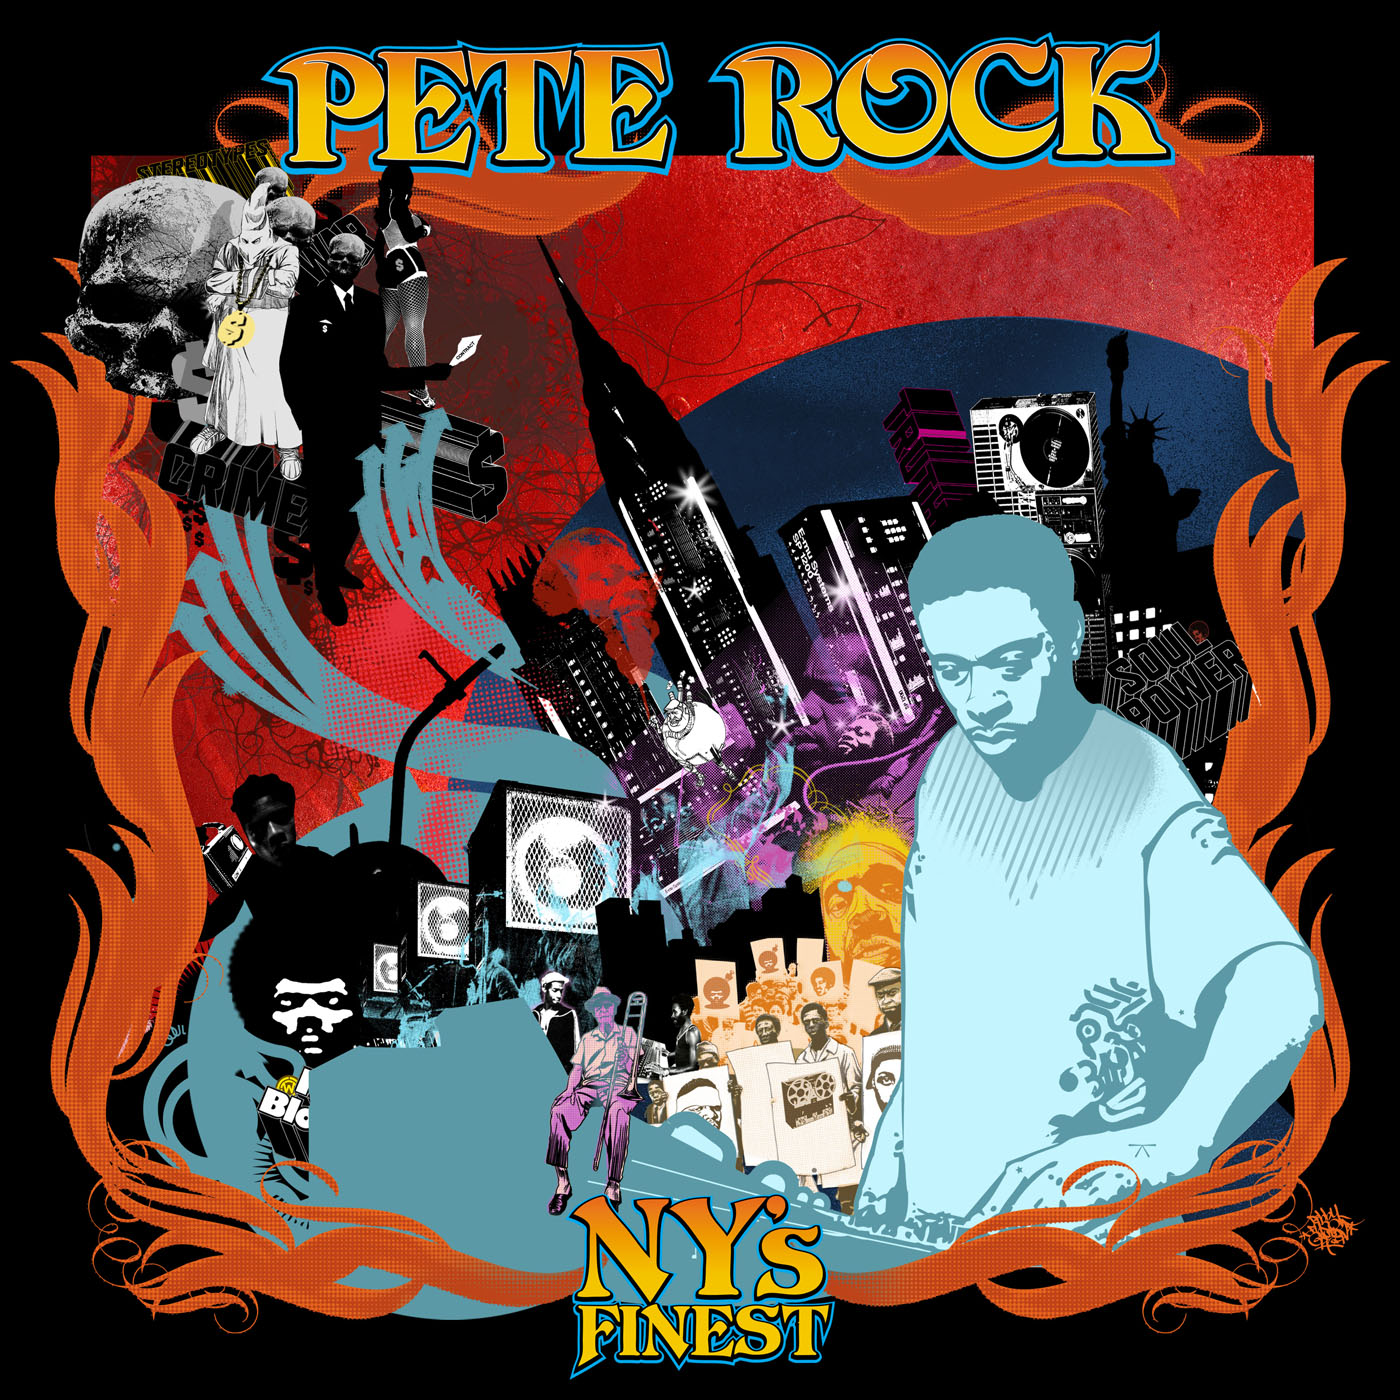 PETE ROCK NY's Finest